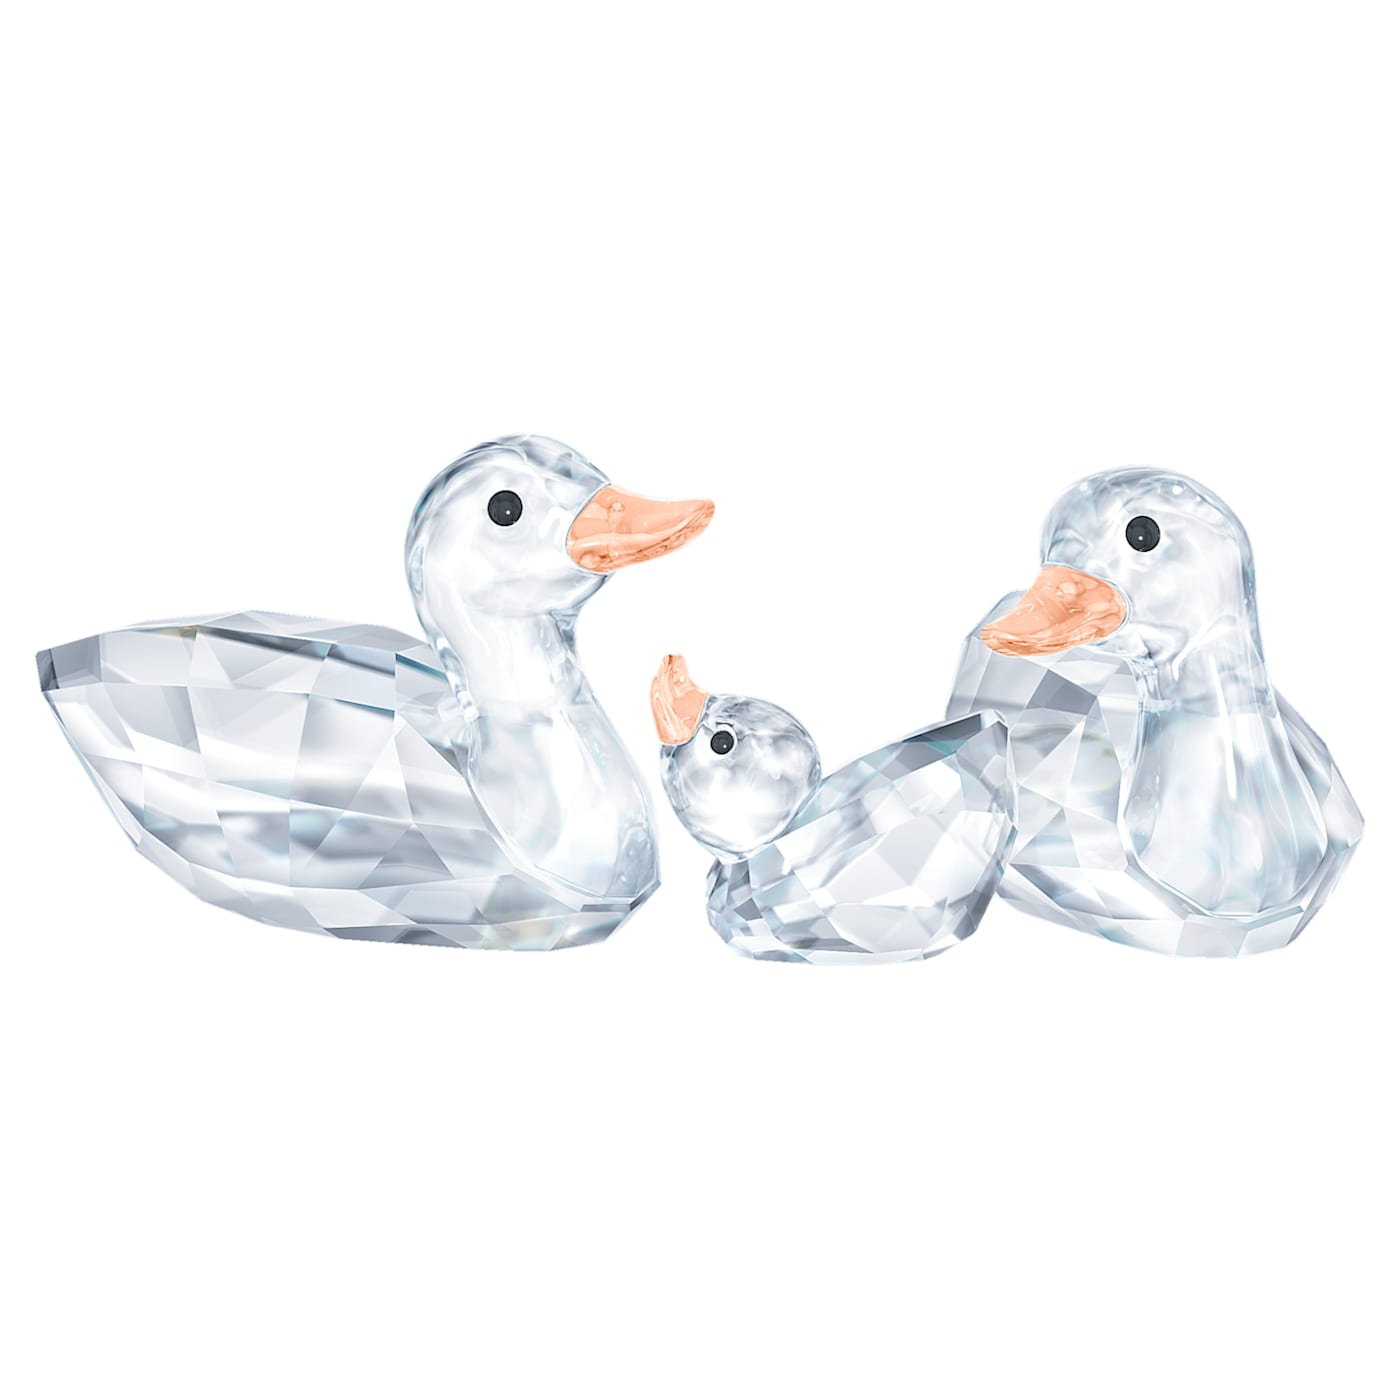 Ducks - Figurine - Swarovski